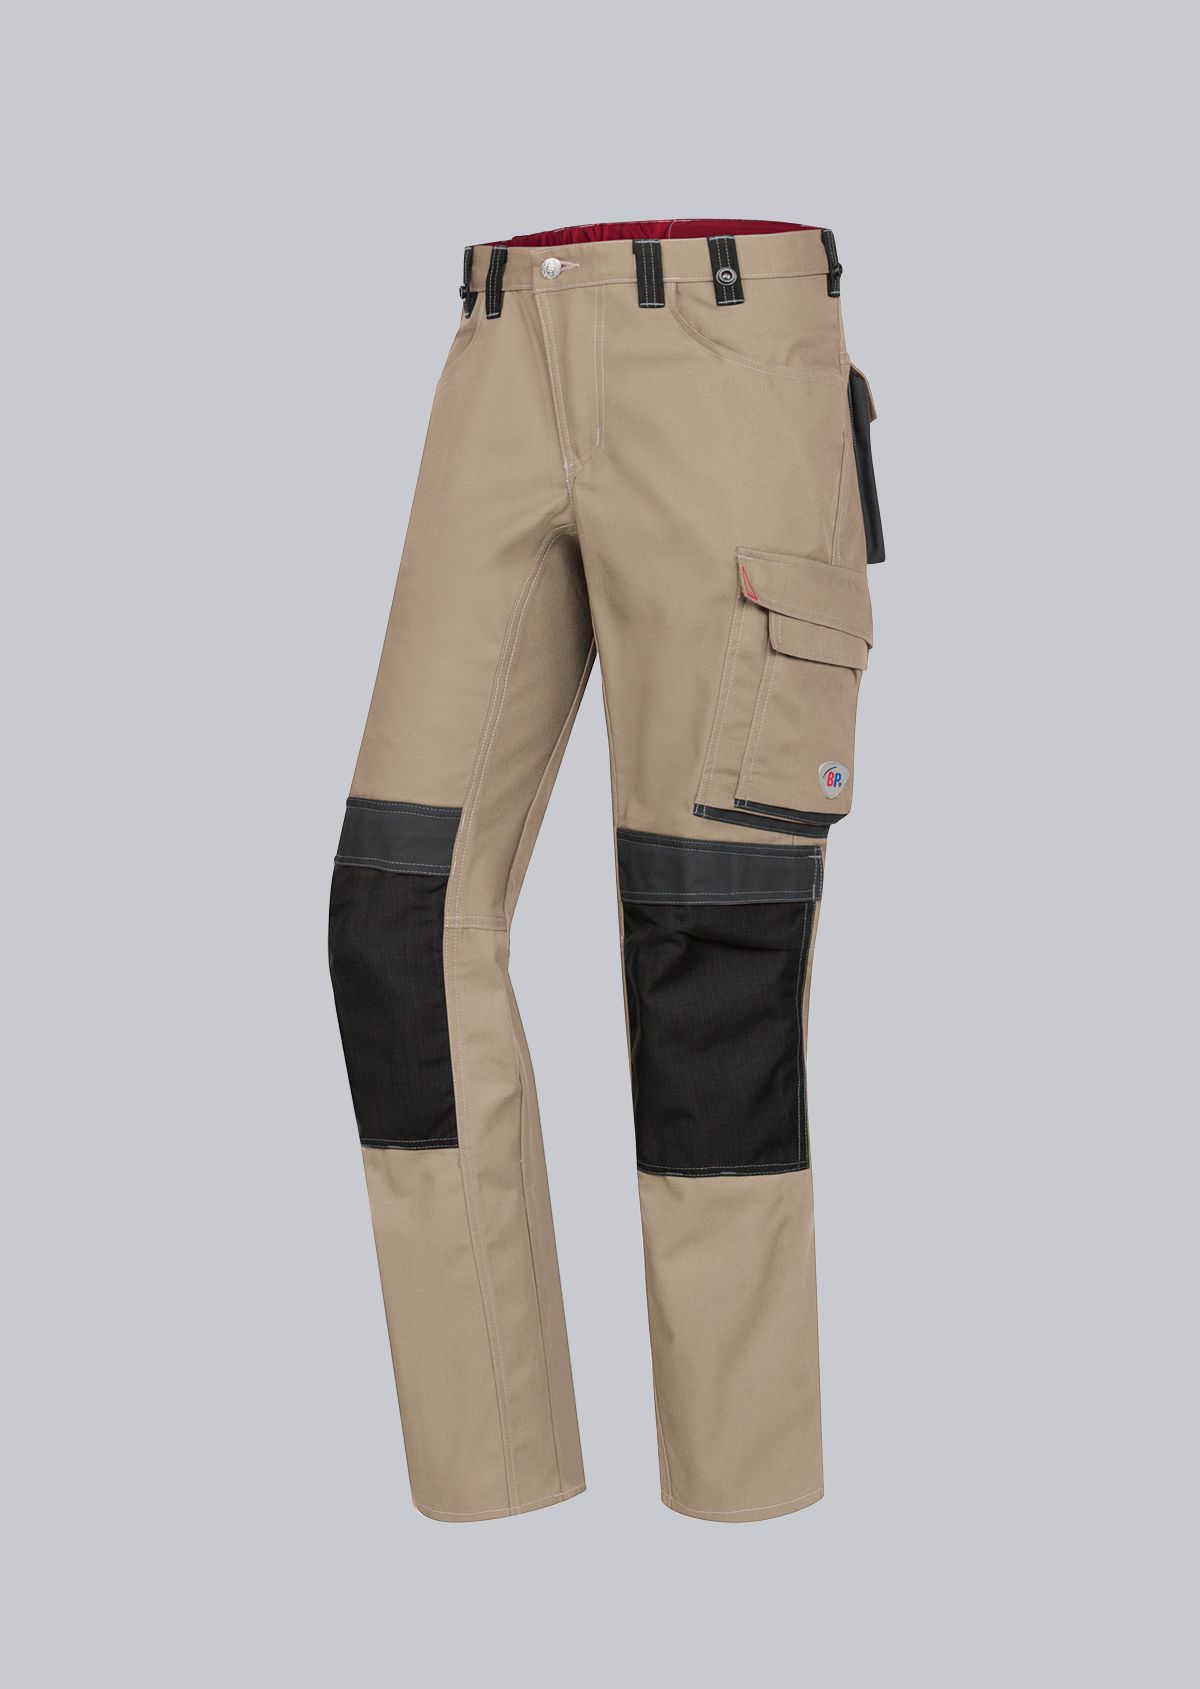 BP® Komfort-Arbeitshose mit Kniepolstertaschen